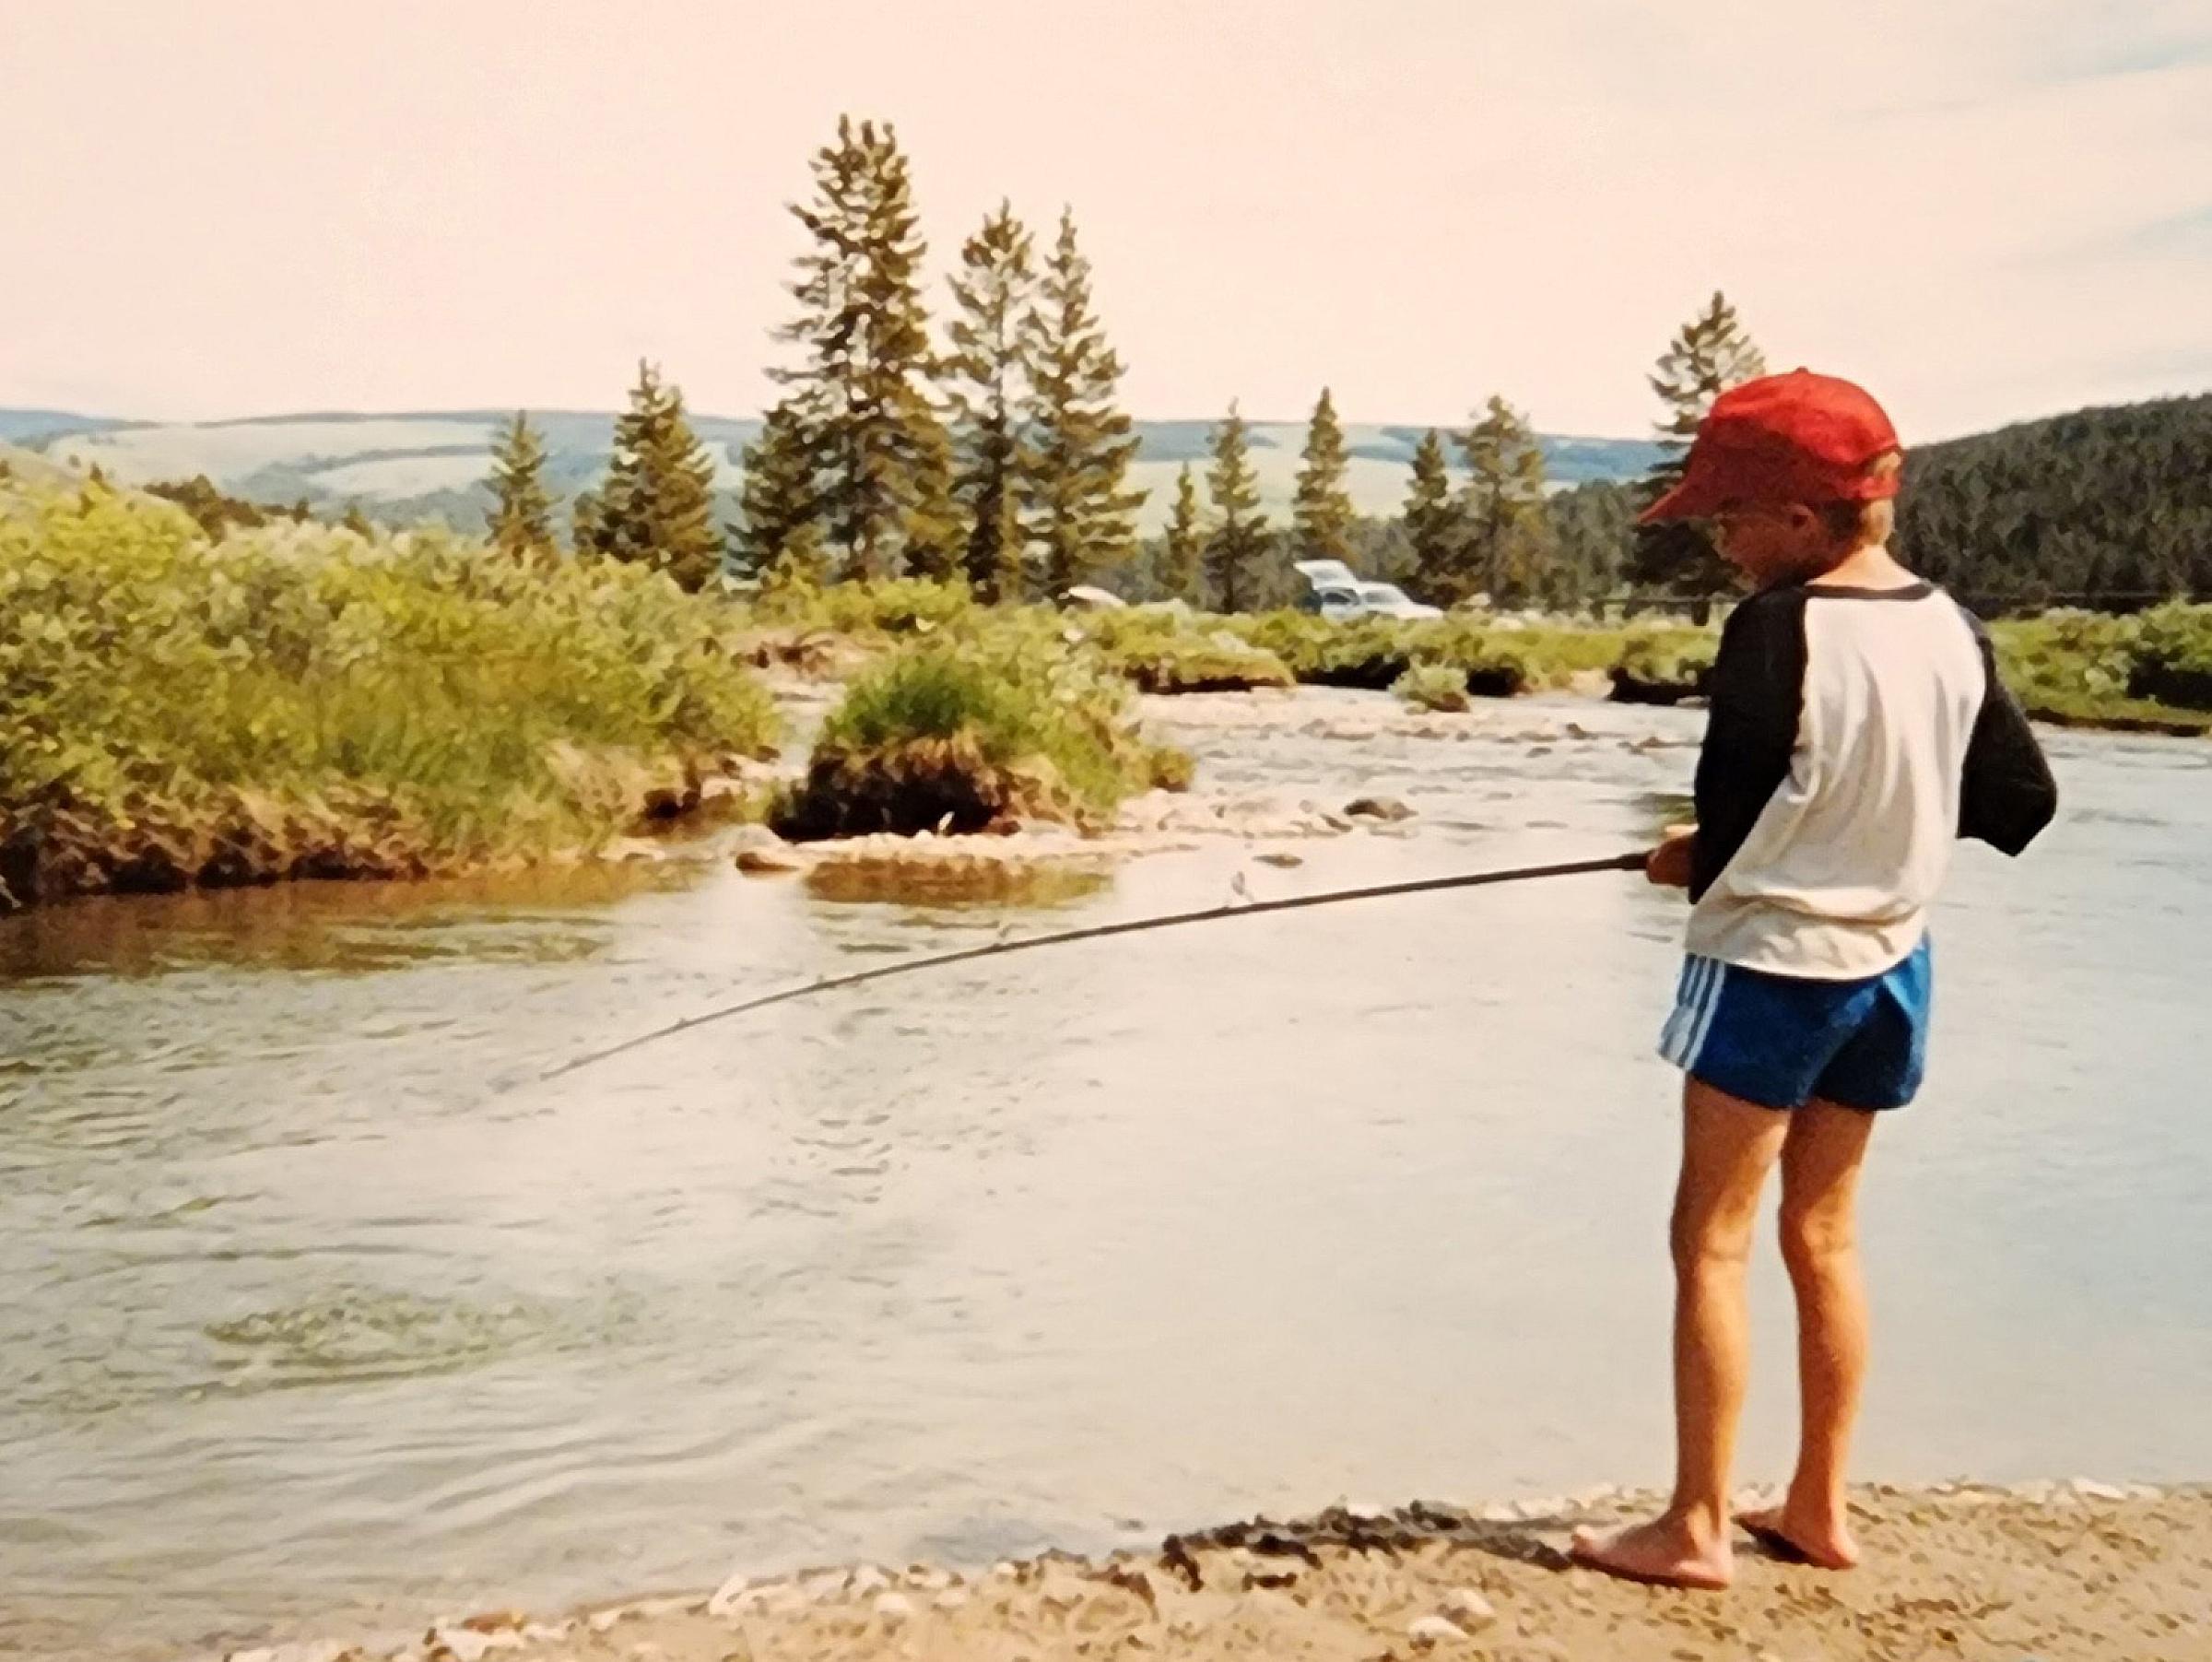 Jakob Jensen fishing as a child.